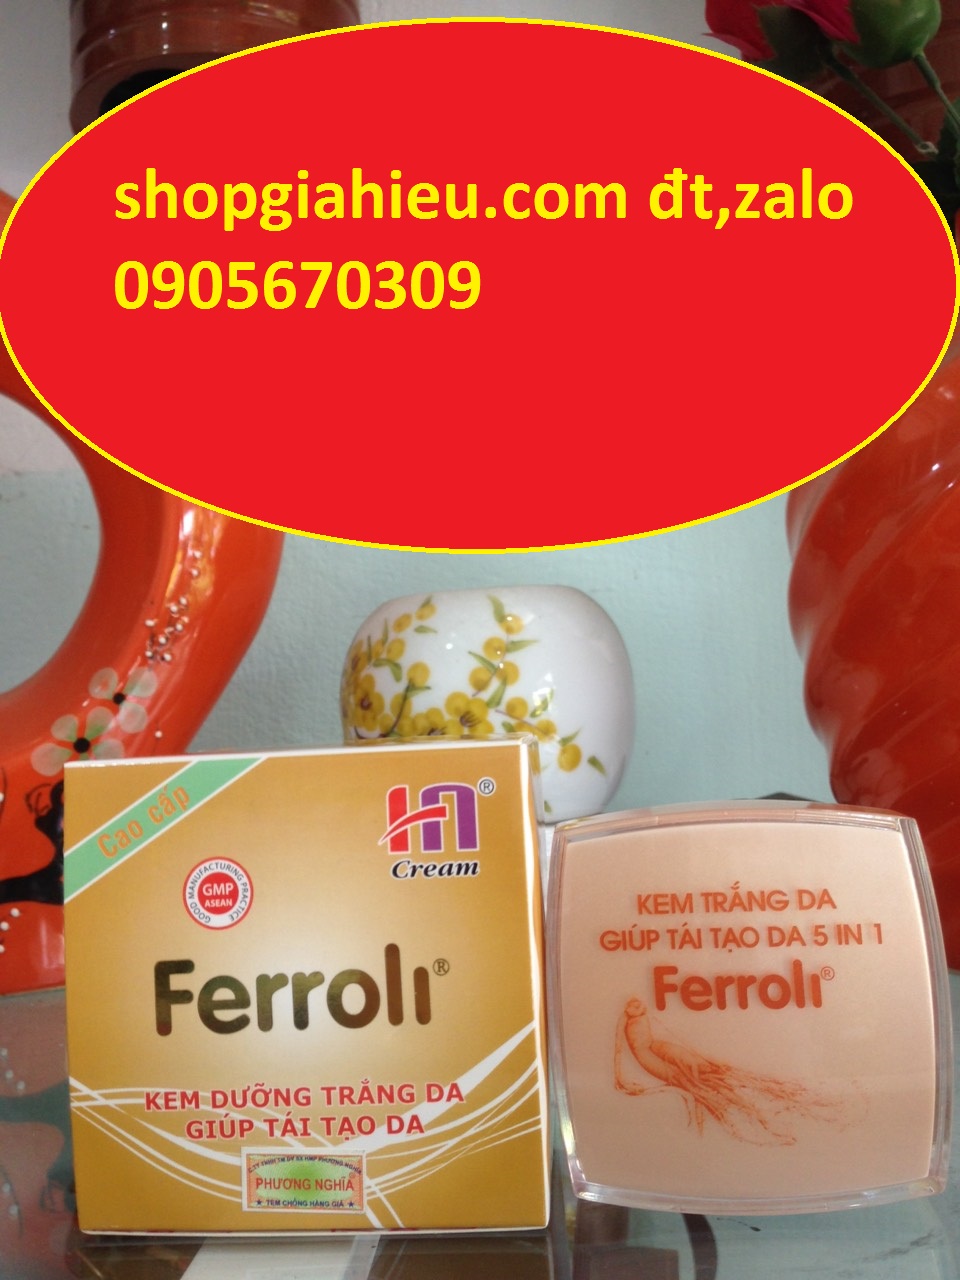 ferroli kem trắng da giúp tái tạo da 5 in 1 (15g)  mỹ phẩm hải ngọc (mỹ phẩm phương nghĩa)